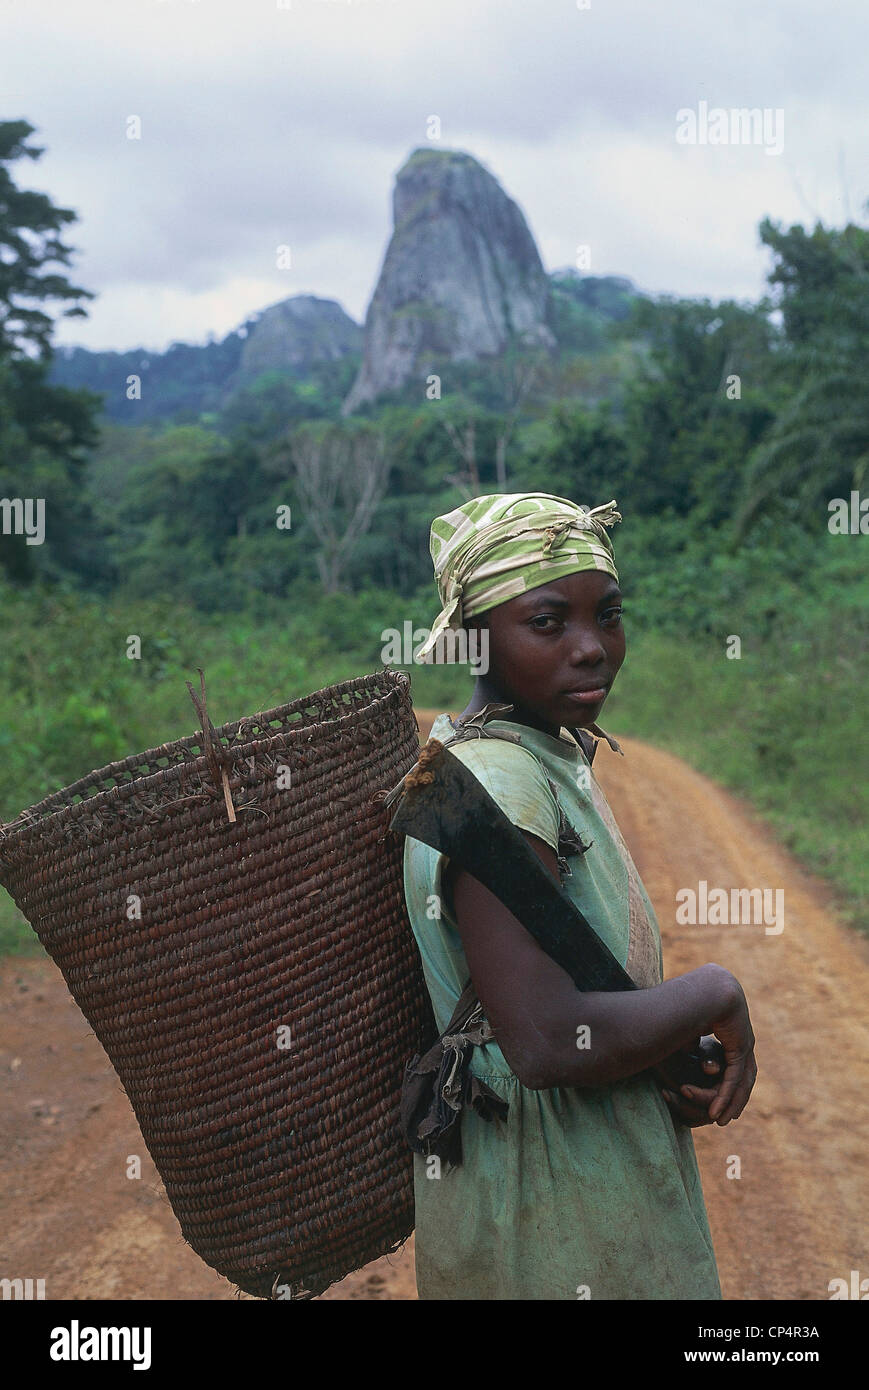 Région du Sud Cameroun Ebolowa. Femme avec panier sur son dos, sur fond d'AKO Akas falaise qui s'élève dans les forêts tropicales Banque D'Images